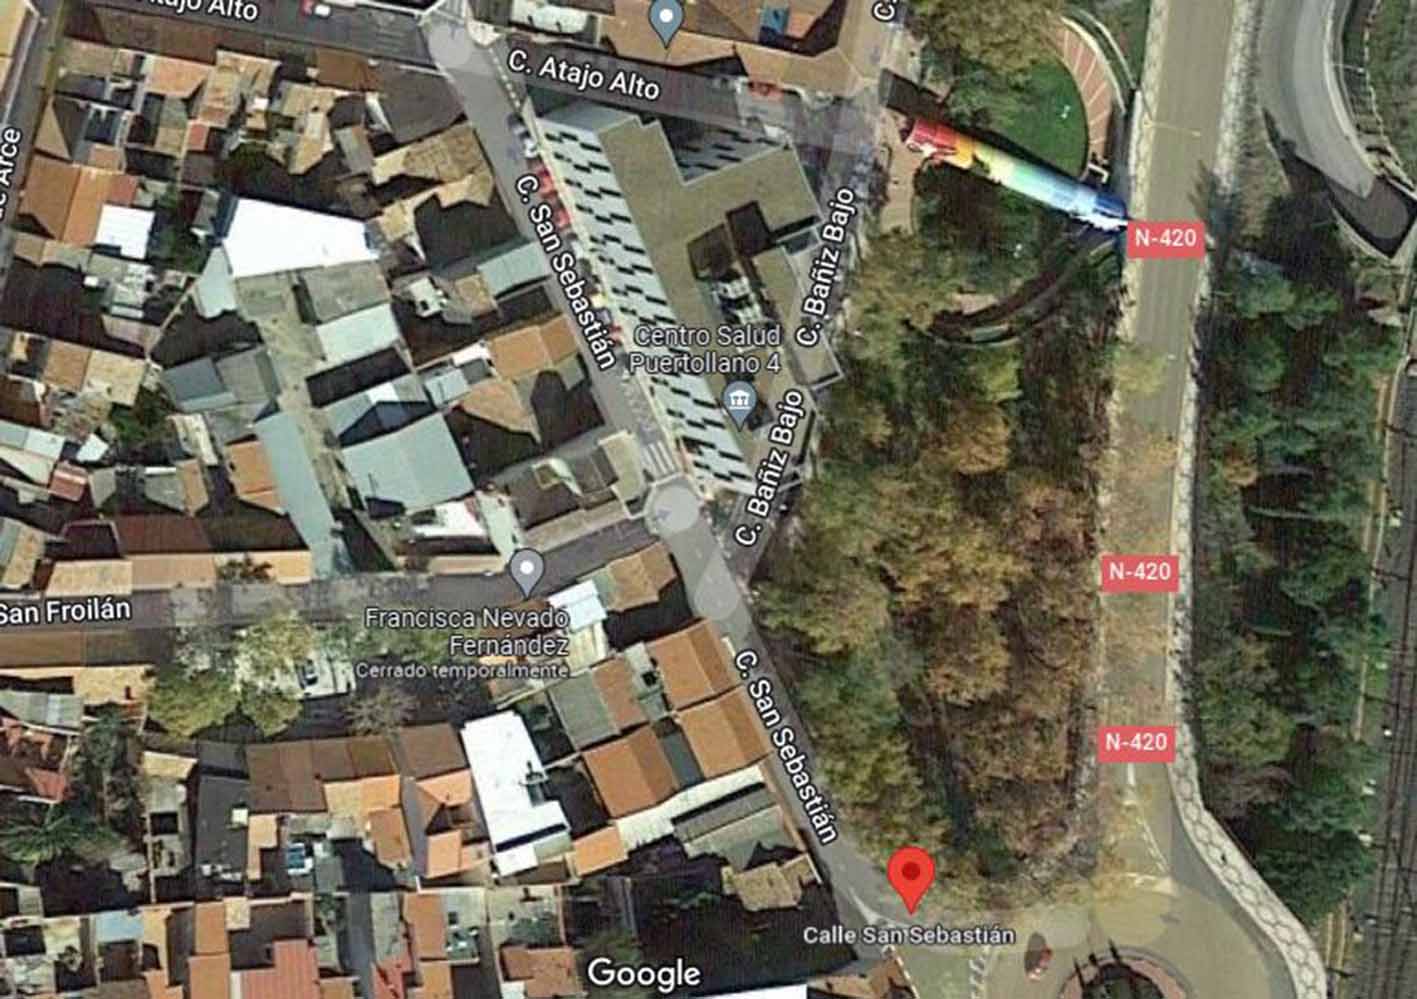 El accidente mortal tuvo lugar en una casa de la calle San Sebastián de Puertollano. Imagen: Google Maps.